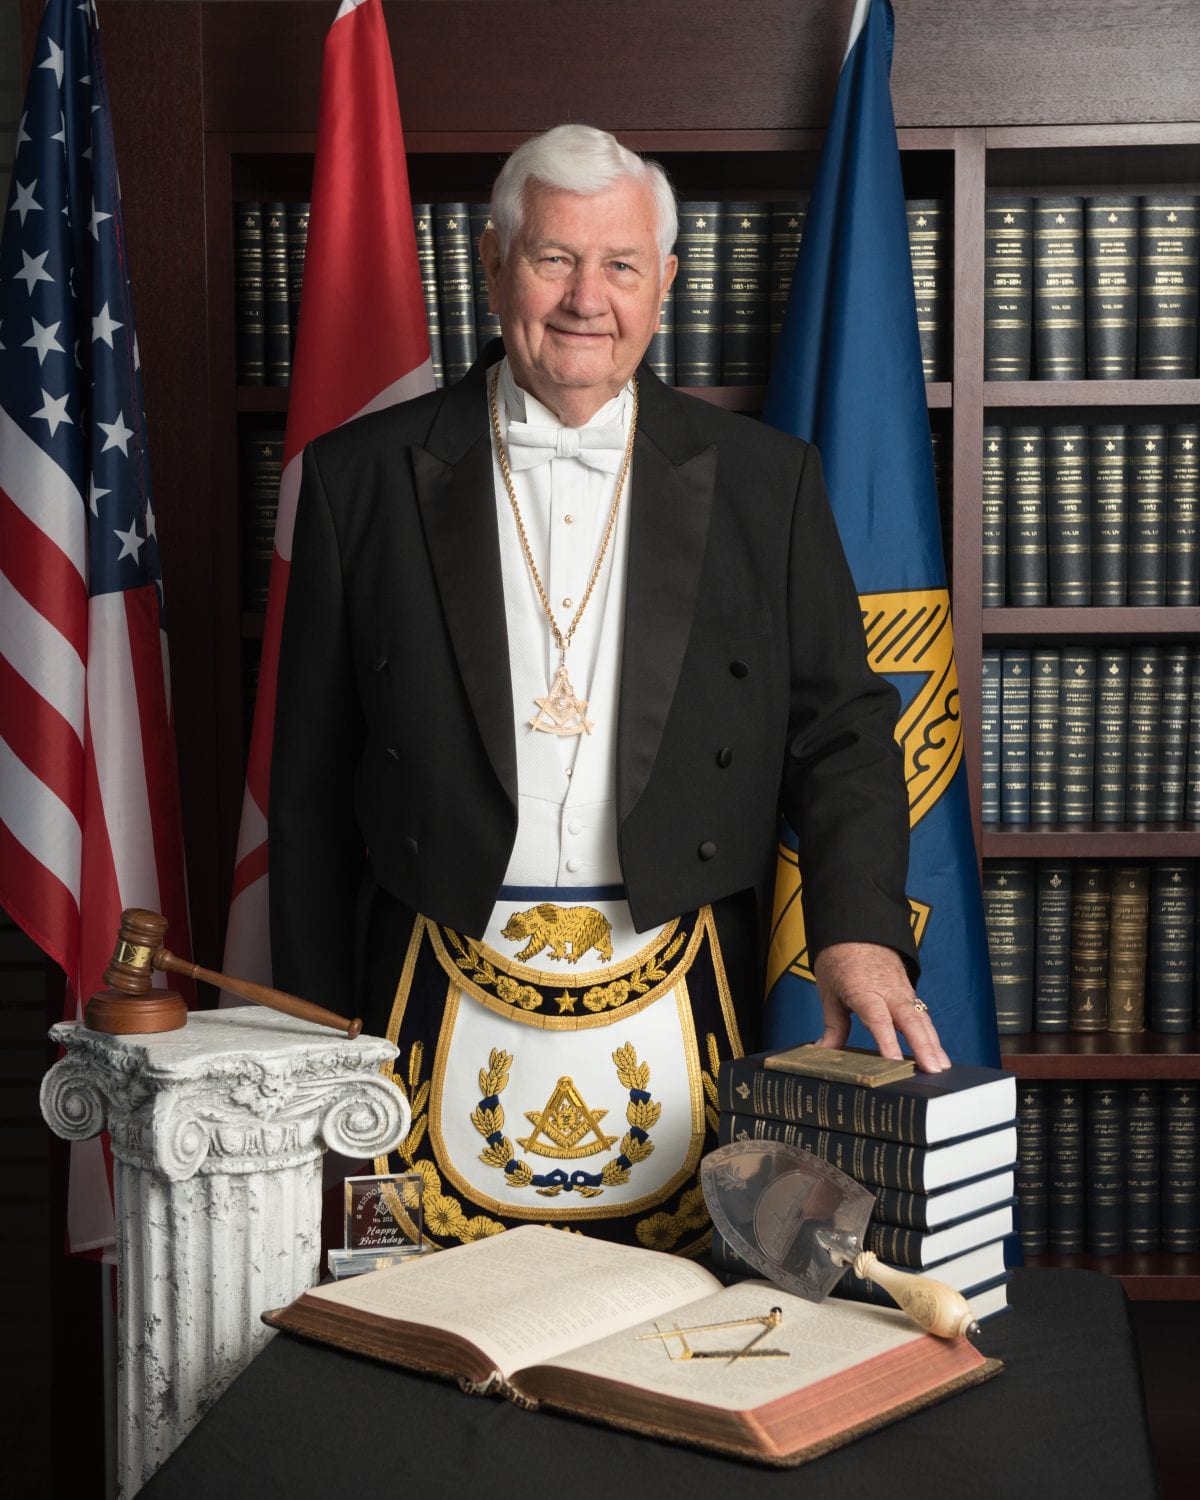 2016 MEGM Conclave Report  Come Get Some - Masonic Regalia